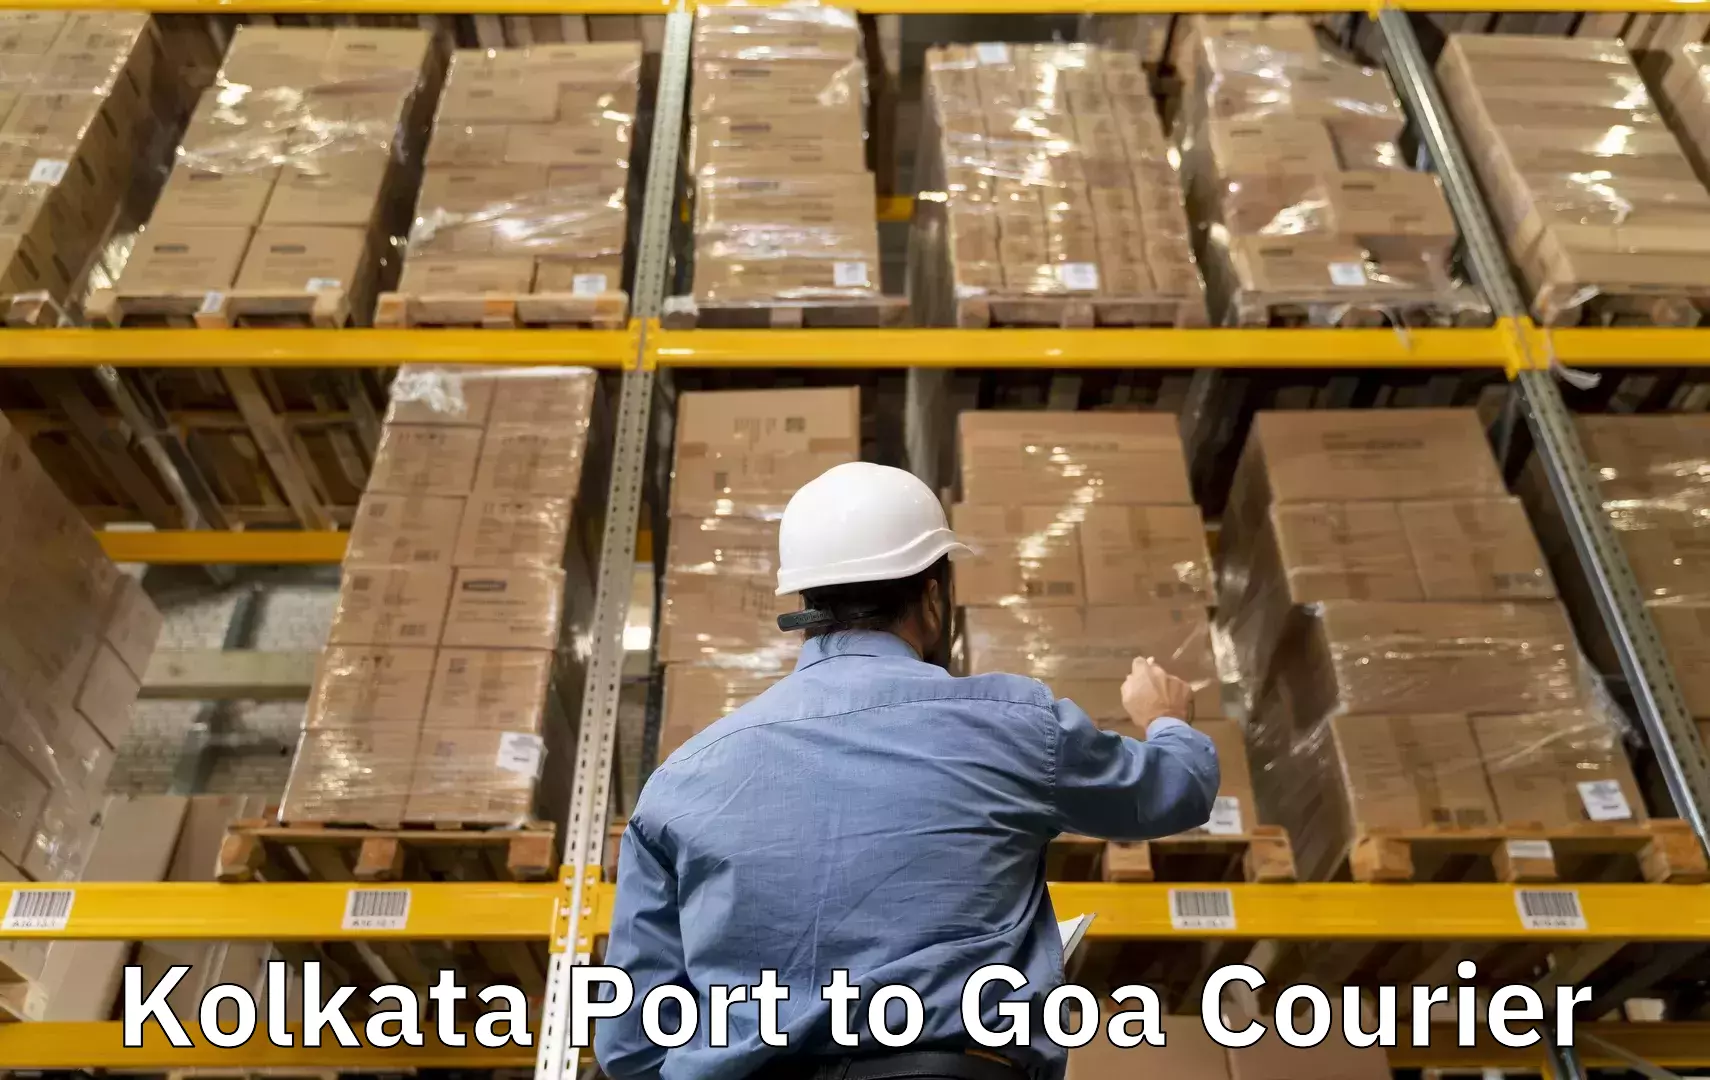 Baggage shipping experience in Kolkata Port to Vasco da Gama